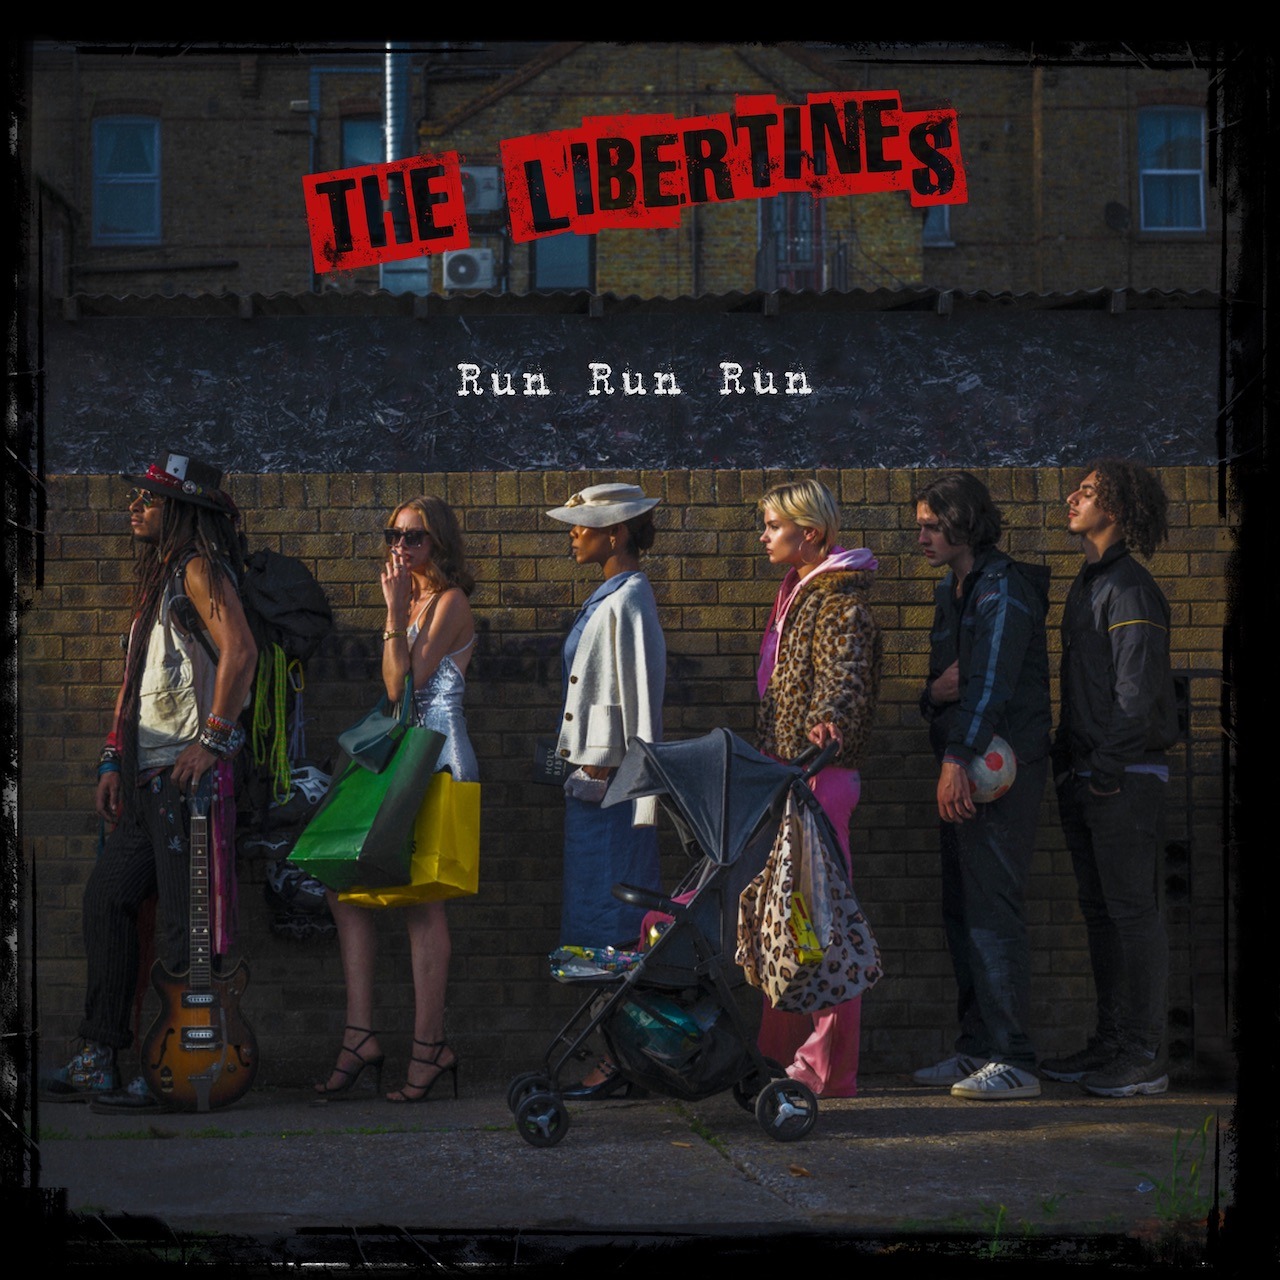 The Libertines Run Run Run cover artwork